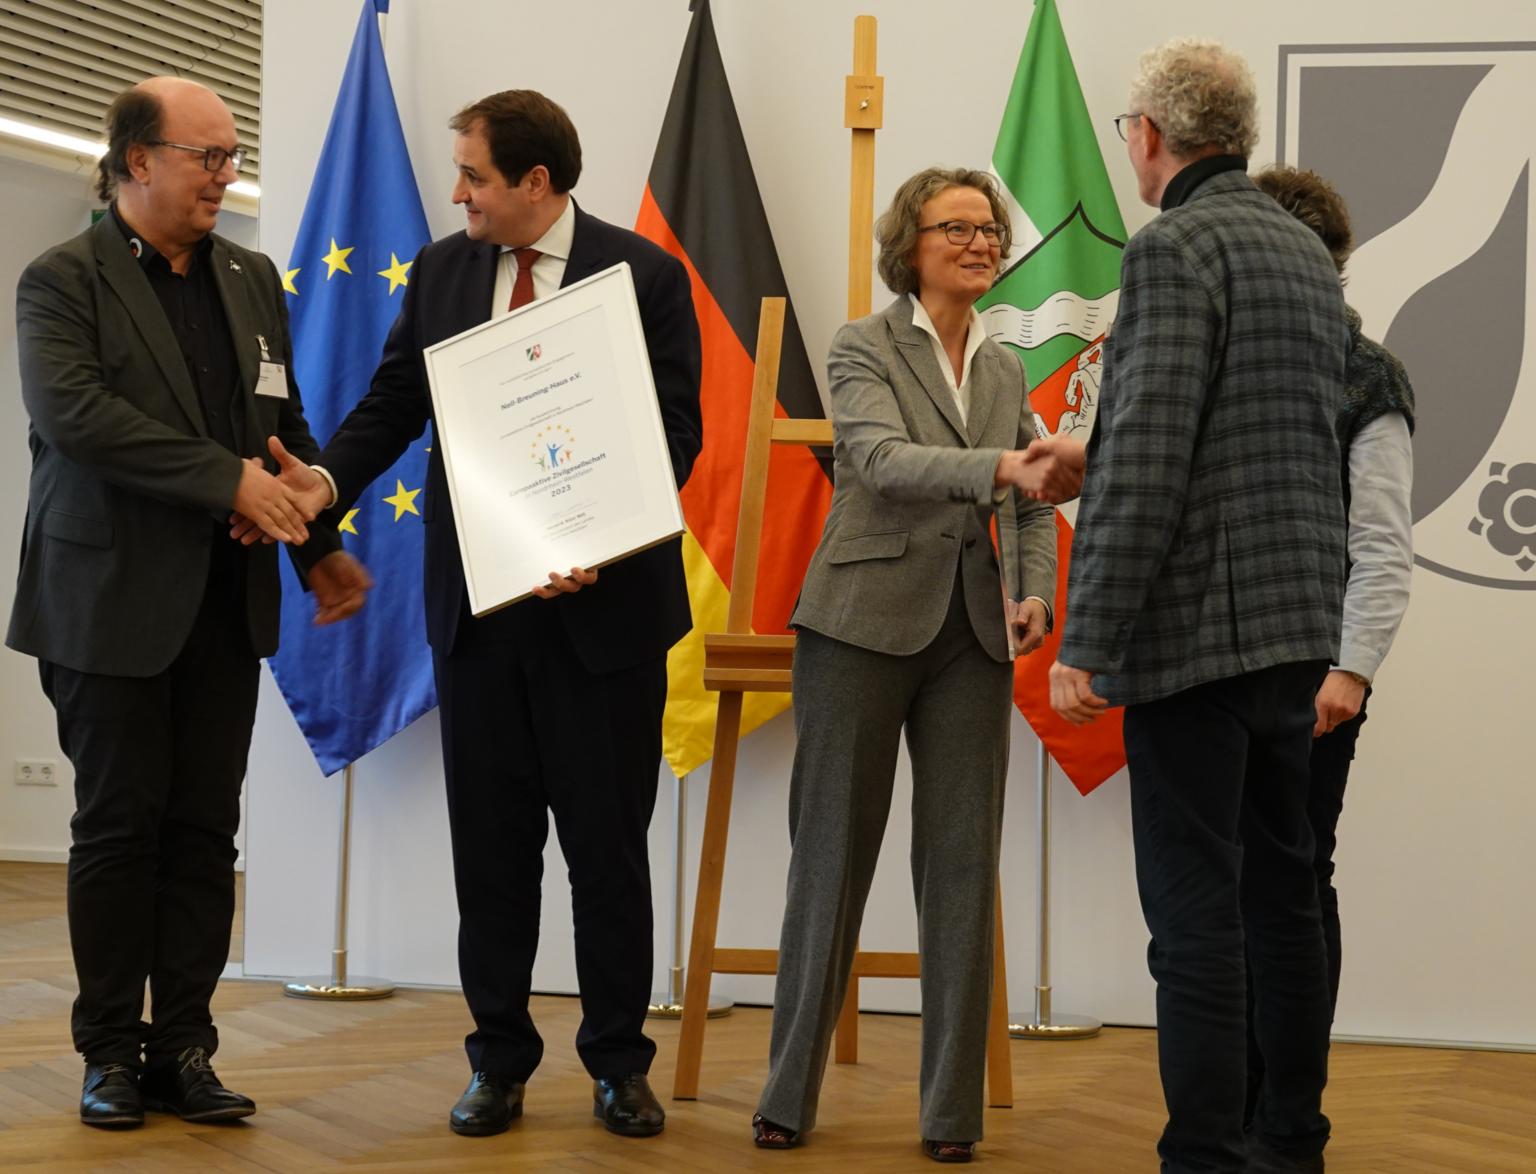 Der Moment der Auszeichnung: Europaminister Nathanael Liminski und Kommunalministerin Ina Scharrenbach gratulierten und überreichten die Urkunde. (c) Thomas Hohenschue